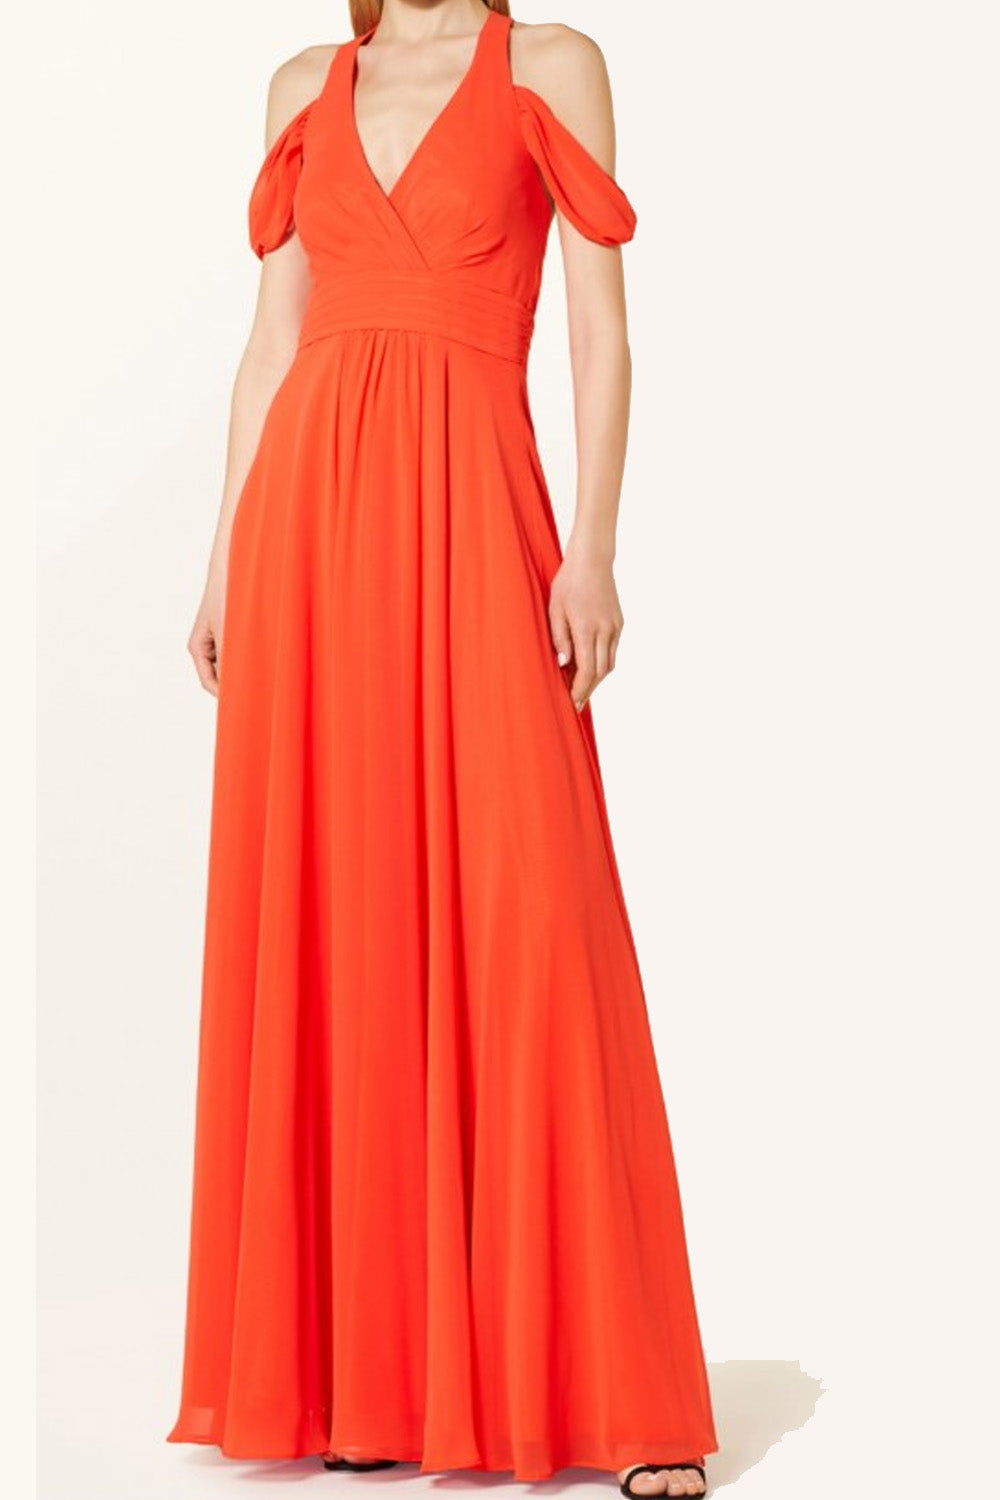 Earthscape Orange Dress